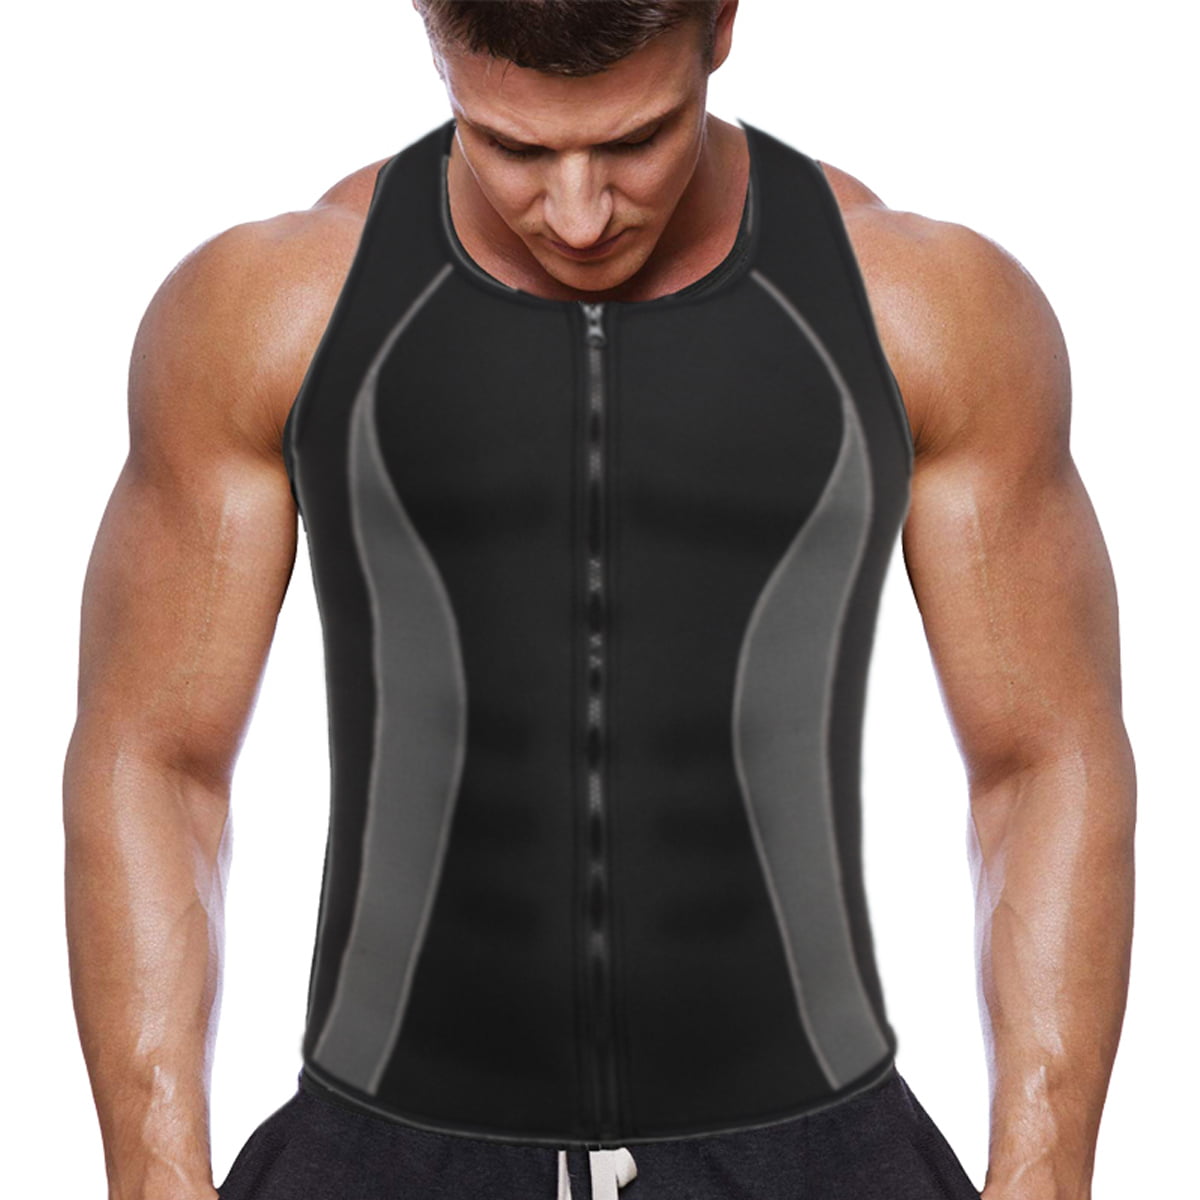 FarJing Men Waist Trainer Vest for Weightloss Hot Neoprene Corset Body Shaper Zipper Sauna Tank Top Workout Shirt